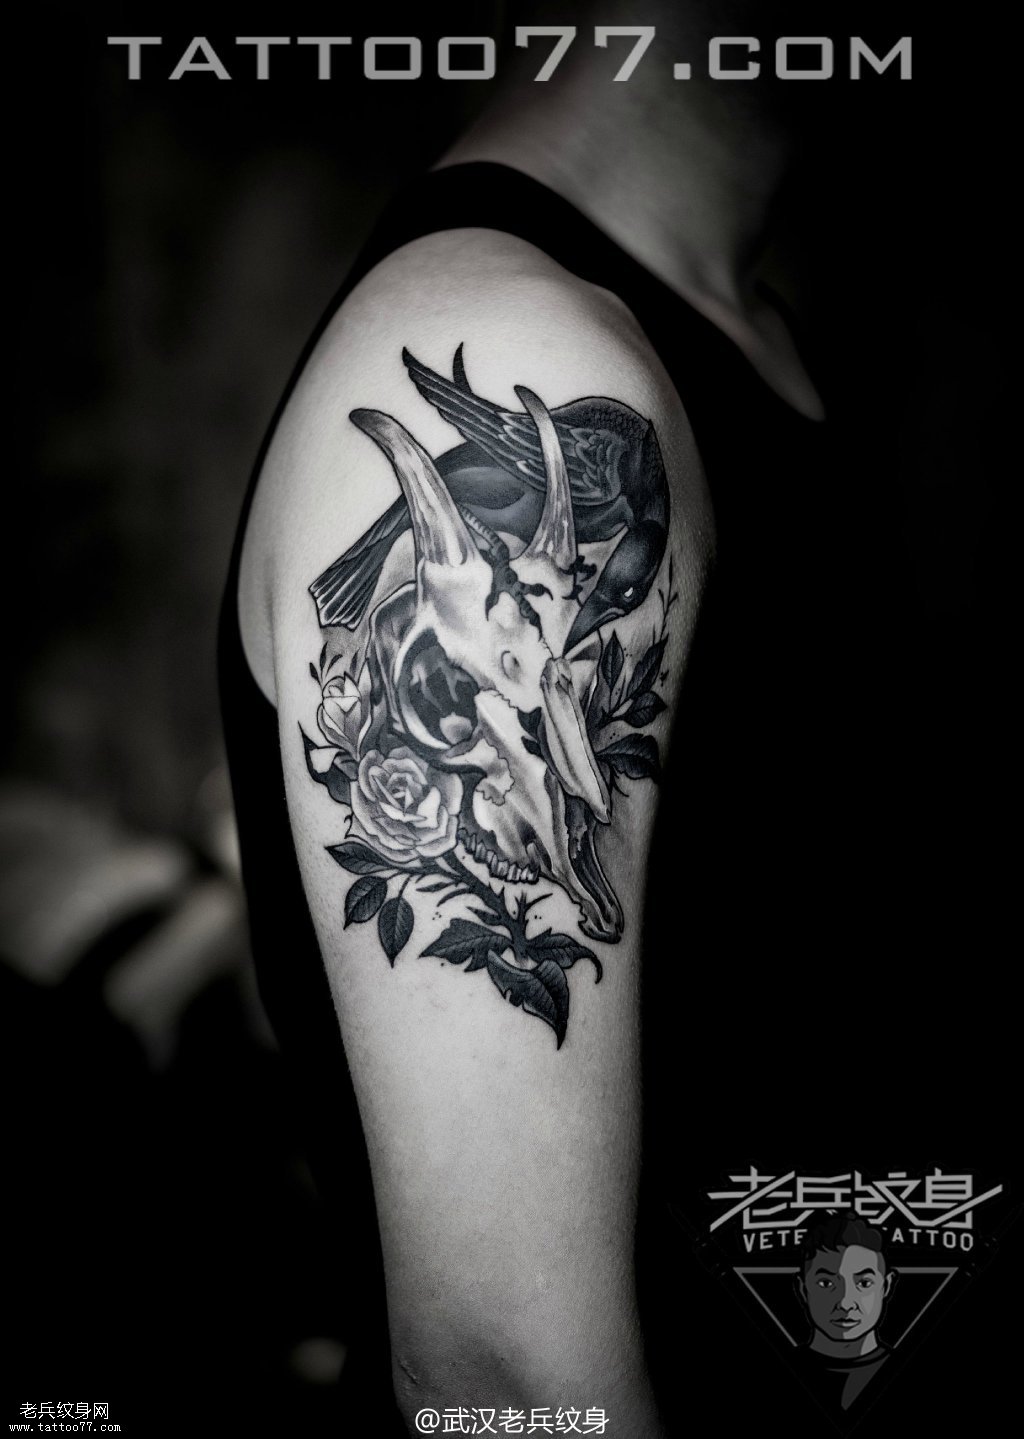 大臂欧美羊骷髅乌鸦纹身图案作品